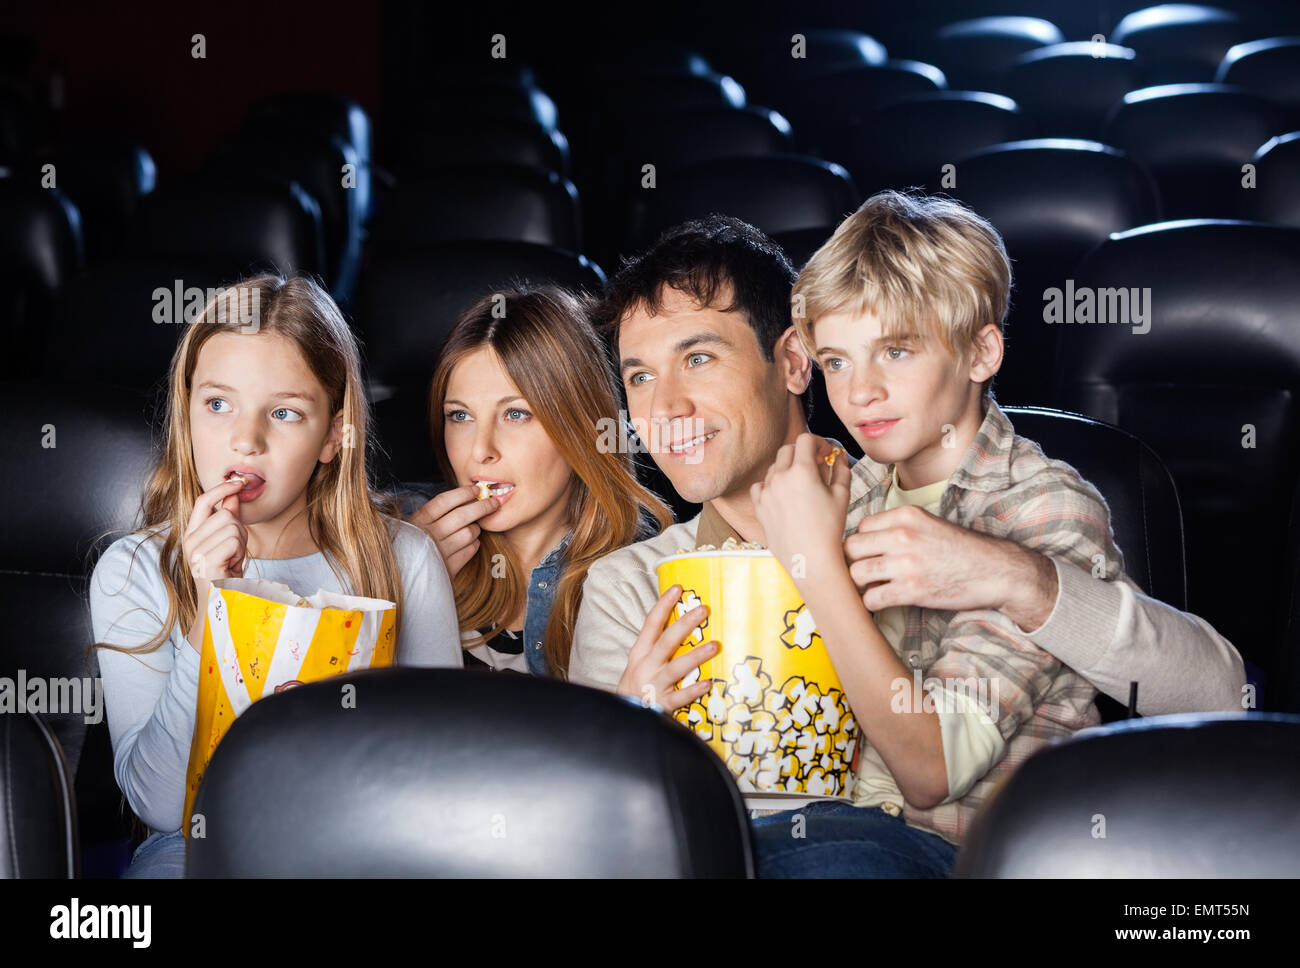 Familie Essen Popcorn Beim Anschauen Films Im Theater Stockfotografie Alamy